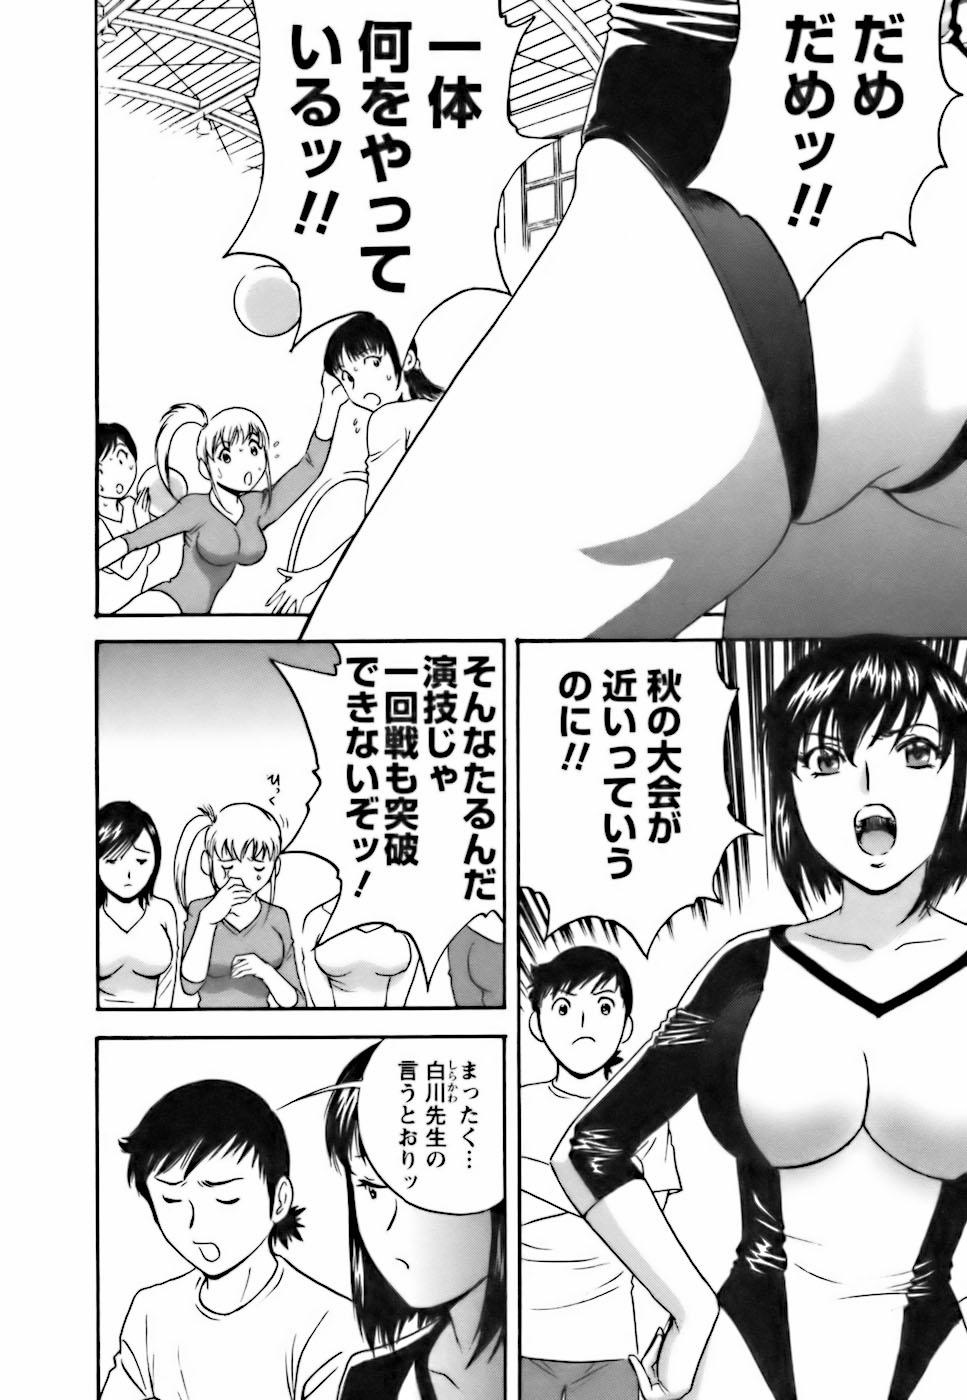 [Hidemaru] Mo-Retsu! Boin Sensei (Boing Boing Teacher) Vol.3 70